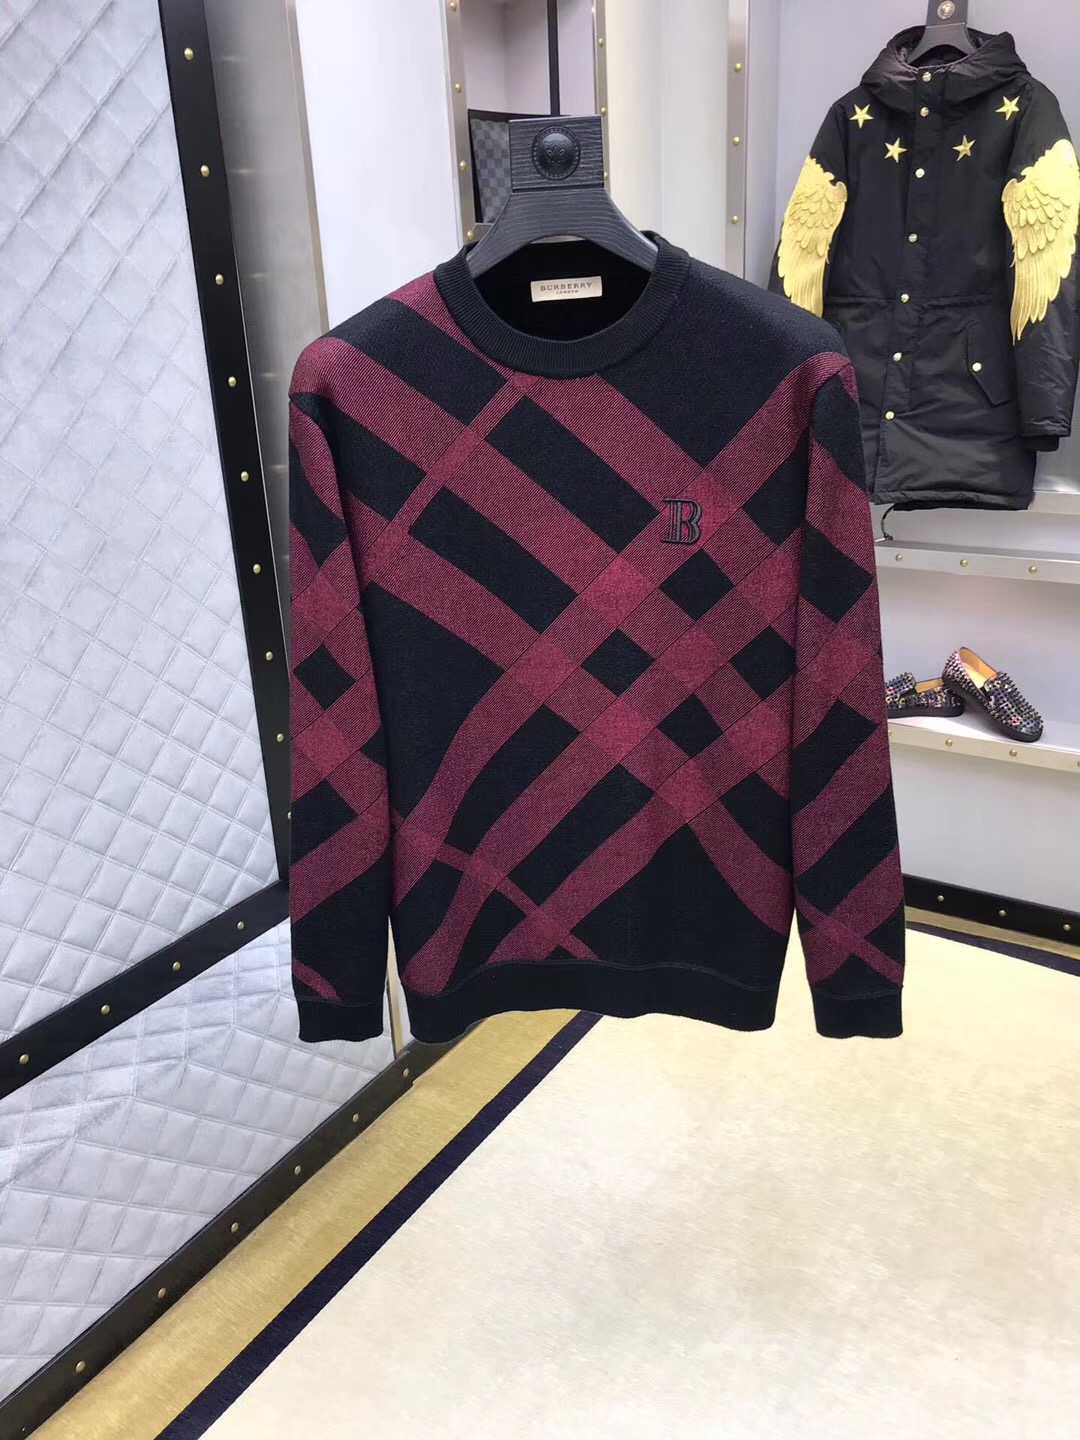  巴宝莉 2018米兰时尚走秀款针织羊毛衫 撞色条纹设计